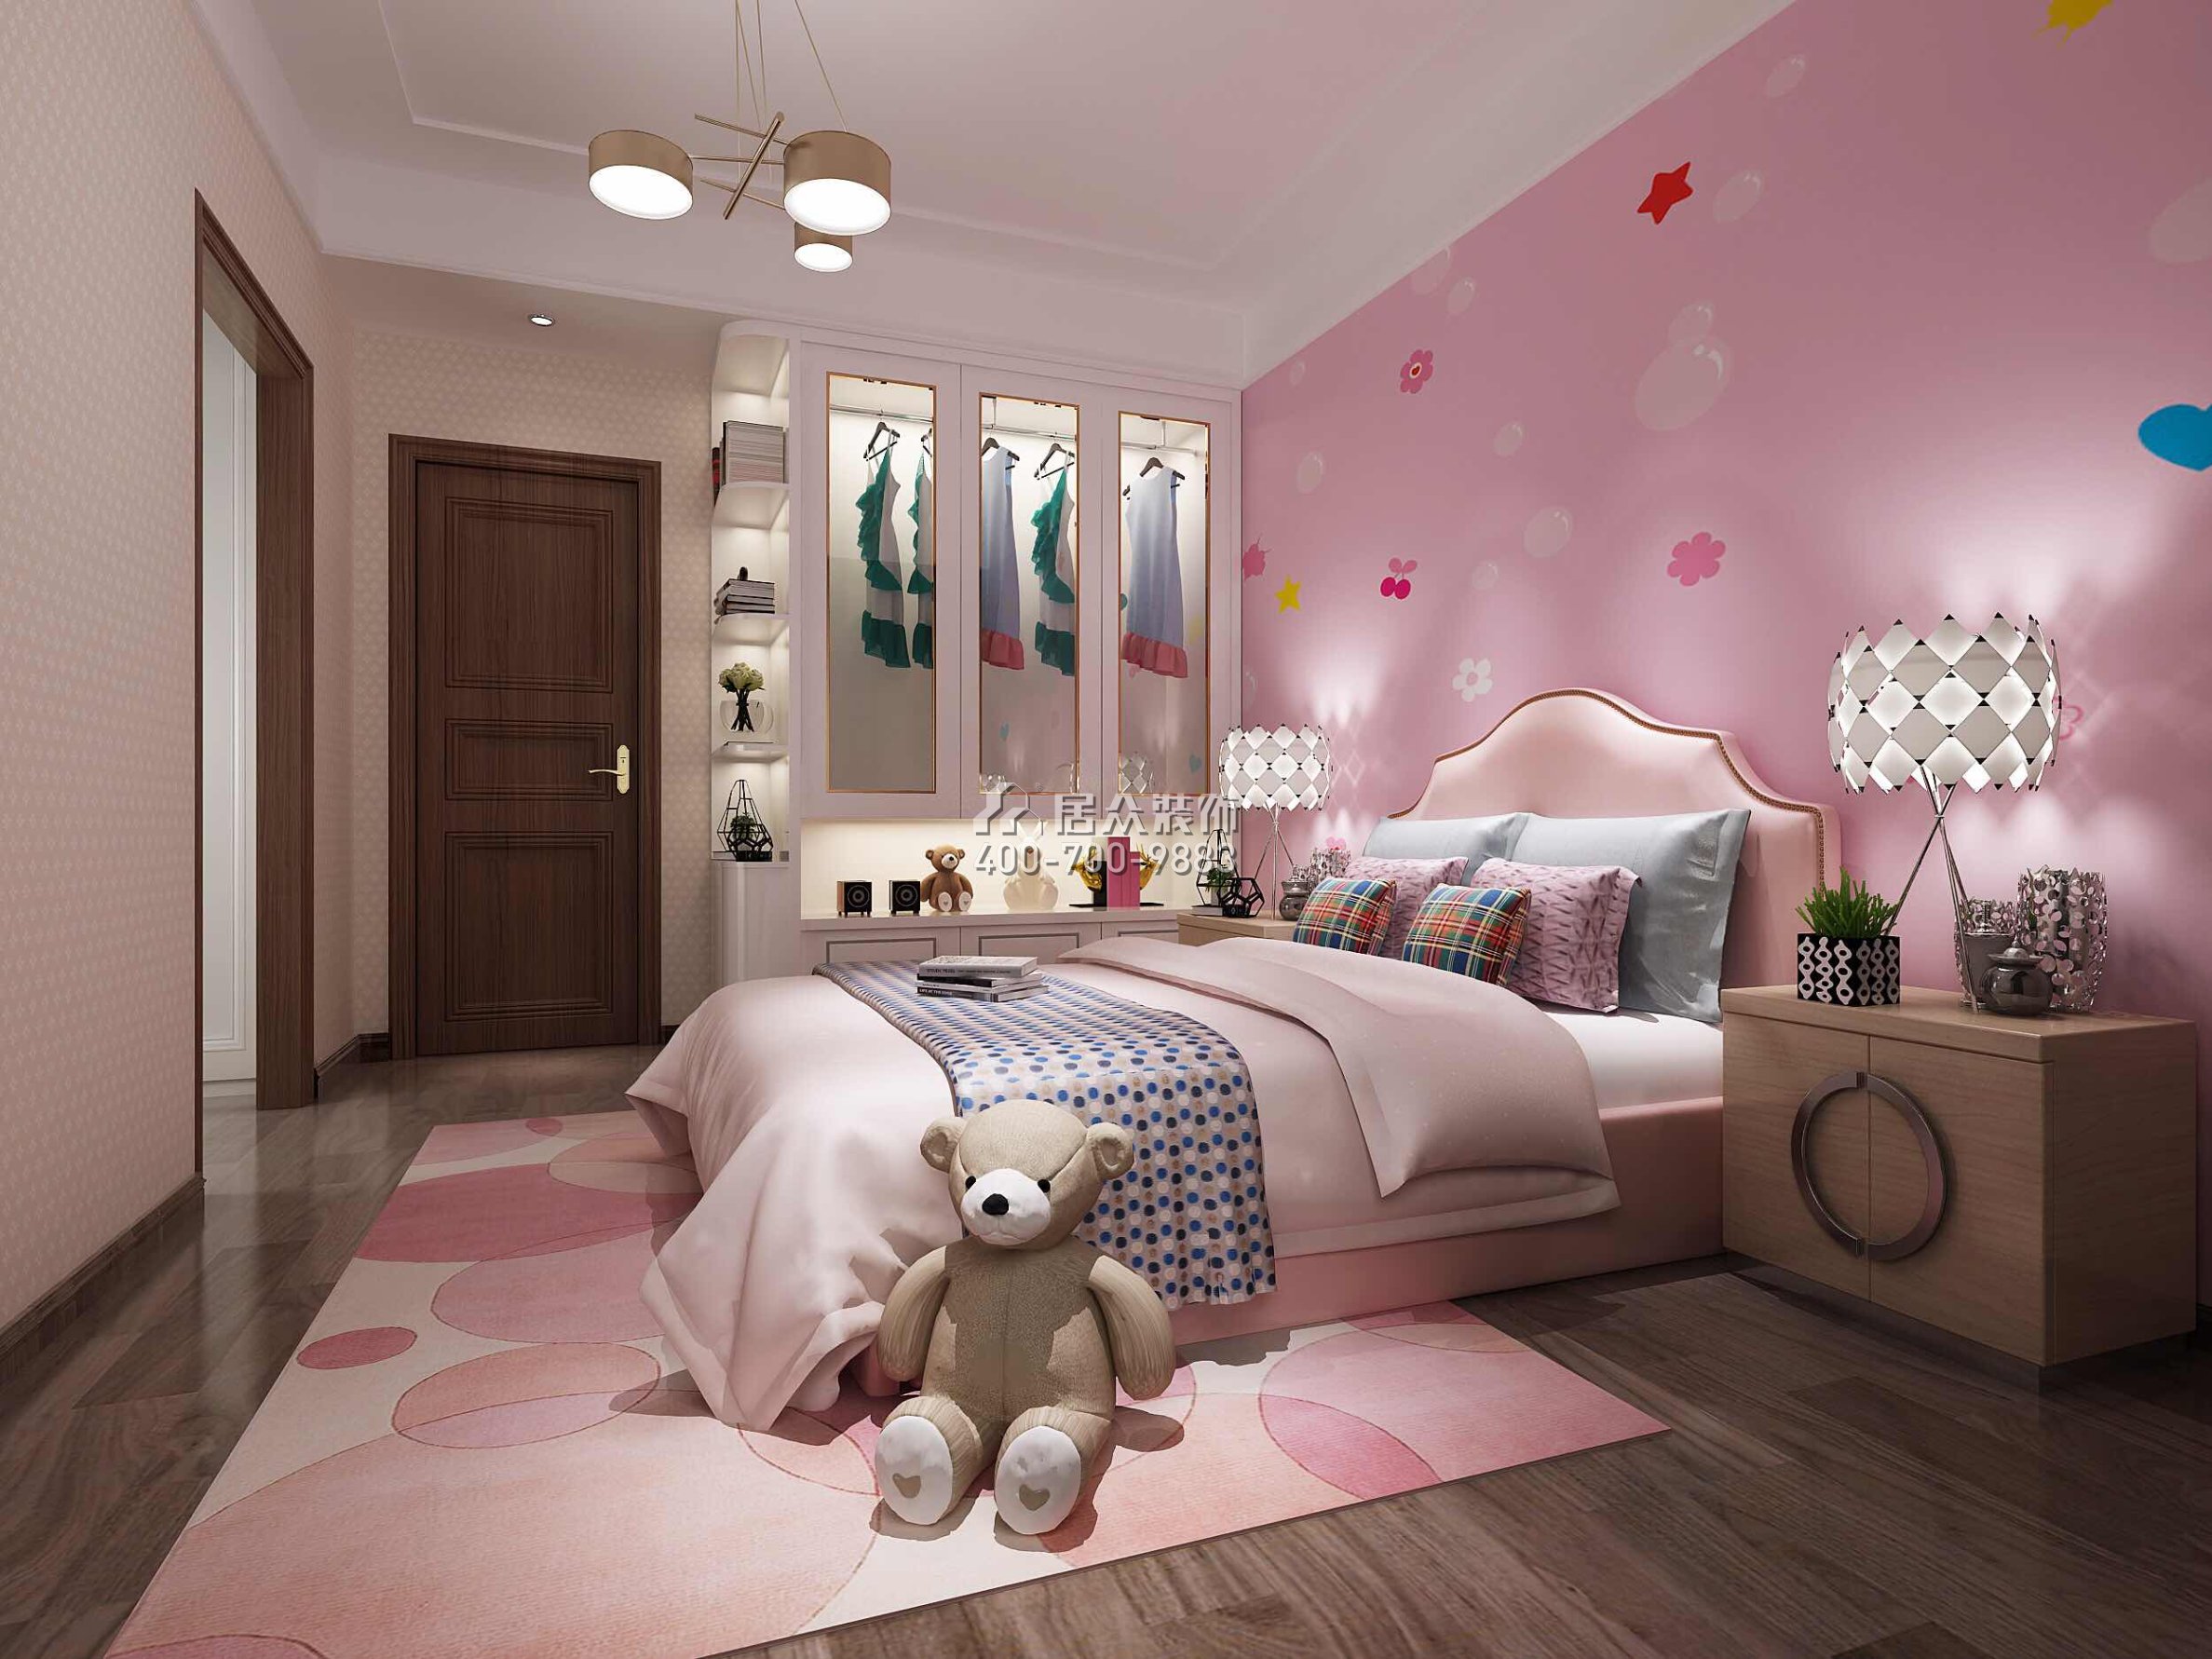 譽江華府450平方米現代簡約風格復式戶型兒童房裝修效果圖